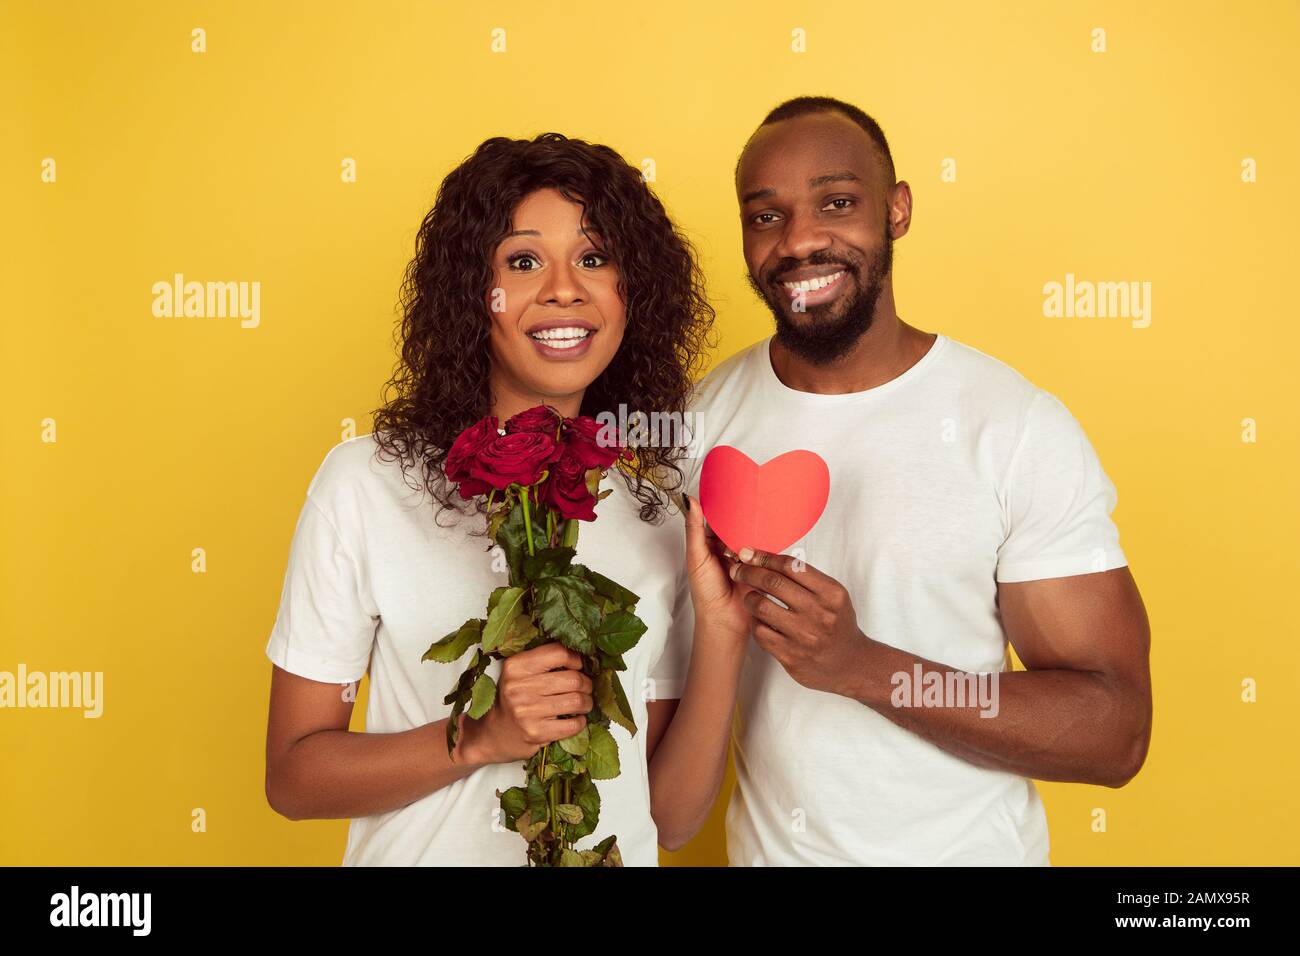 Blumen und Herz. Valentinstag gefeiert, glückliches afro-amerikanisches Paar isoliert auf gelbem Studiohintergrund. Konzept menschlicher Emotionen, Gesichtsausdruck, Liebe, Beziehungen, romantische Feiertage. Stockfoto